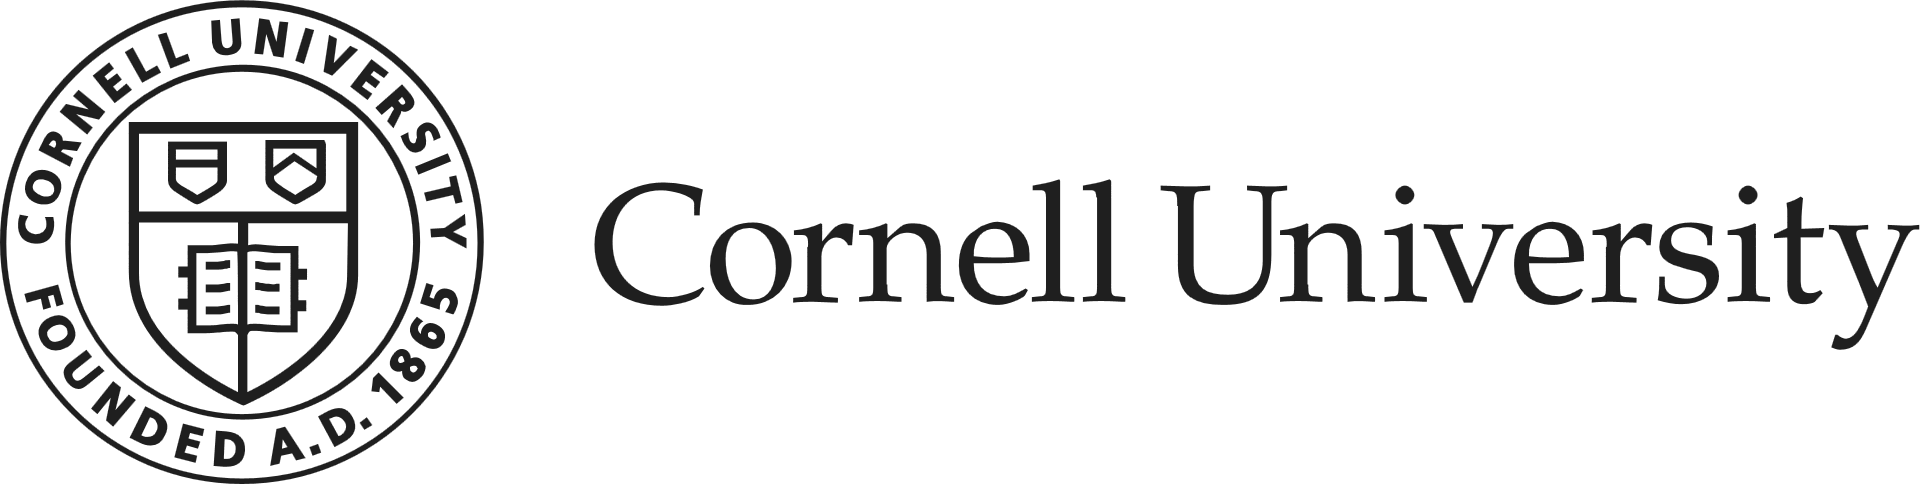 Cornell's logo